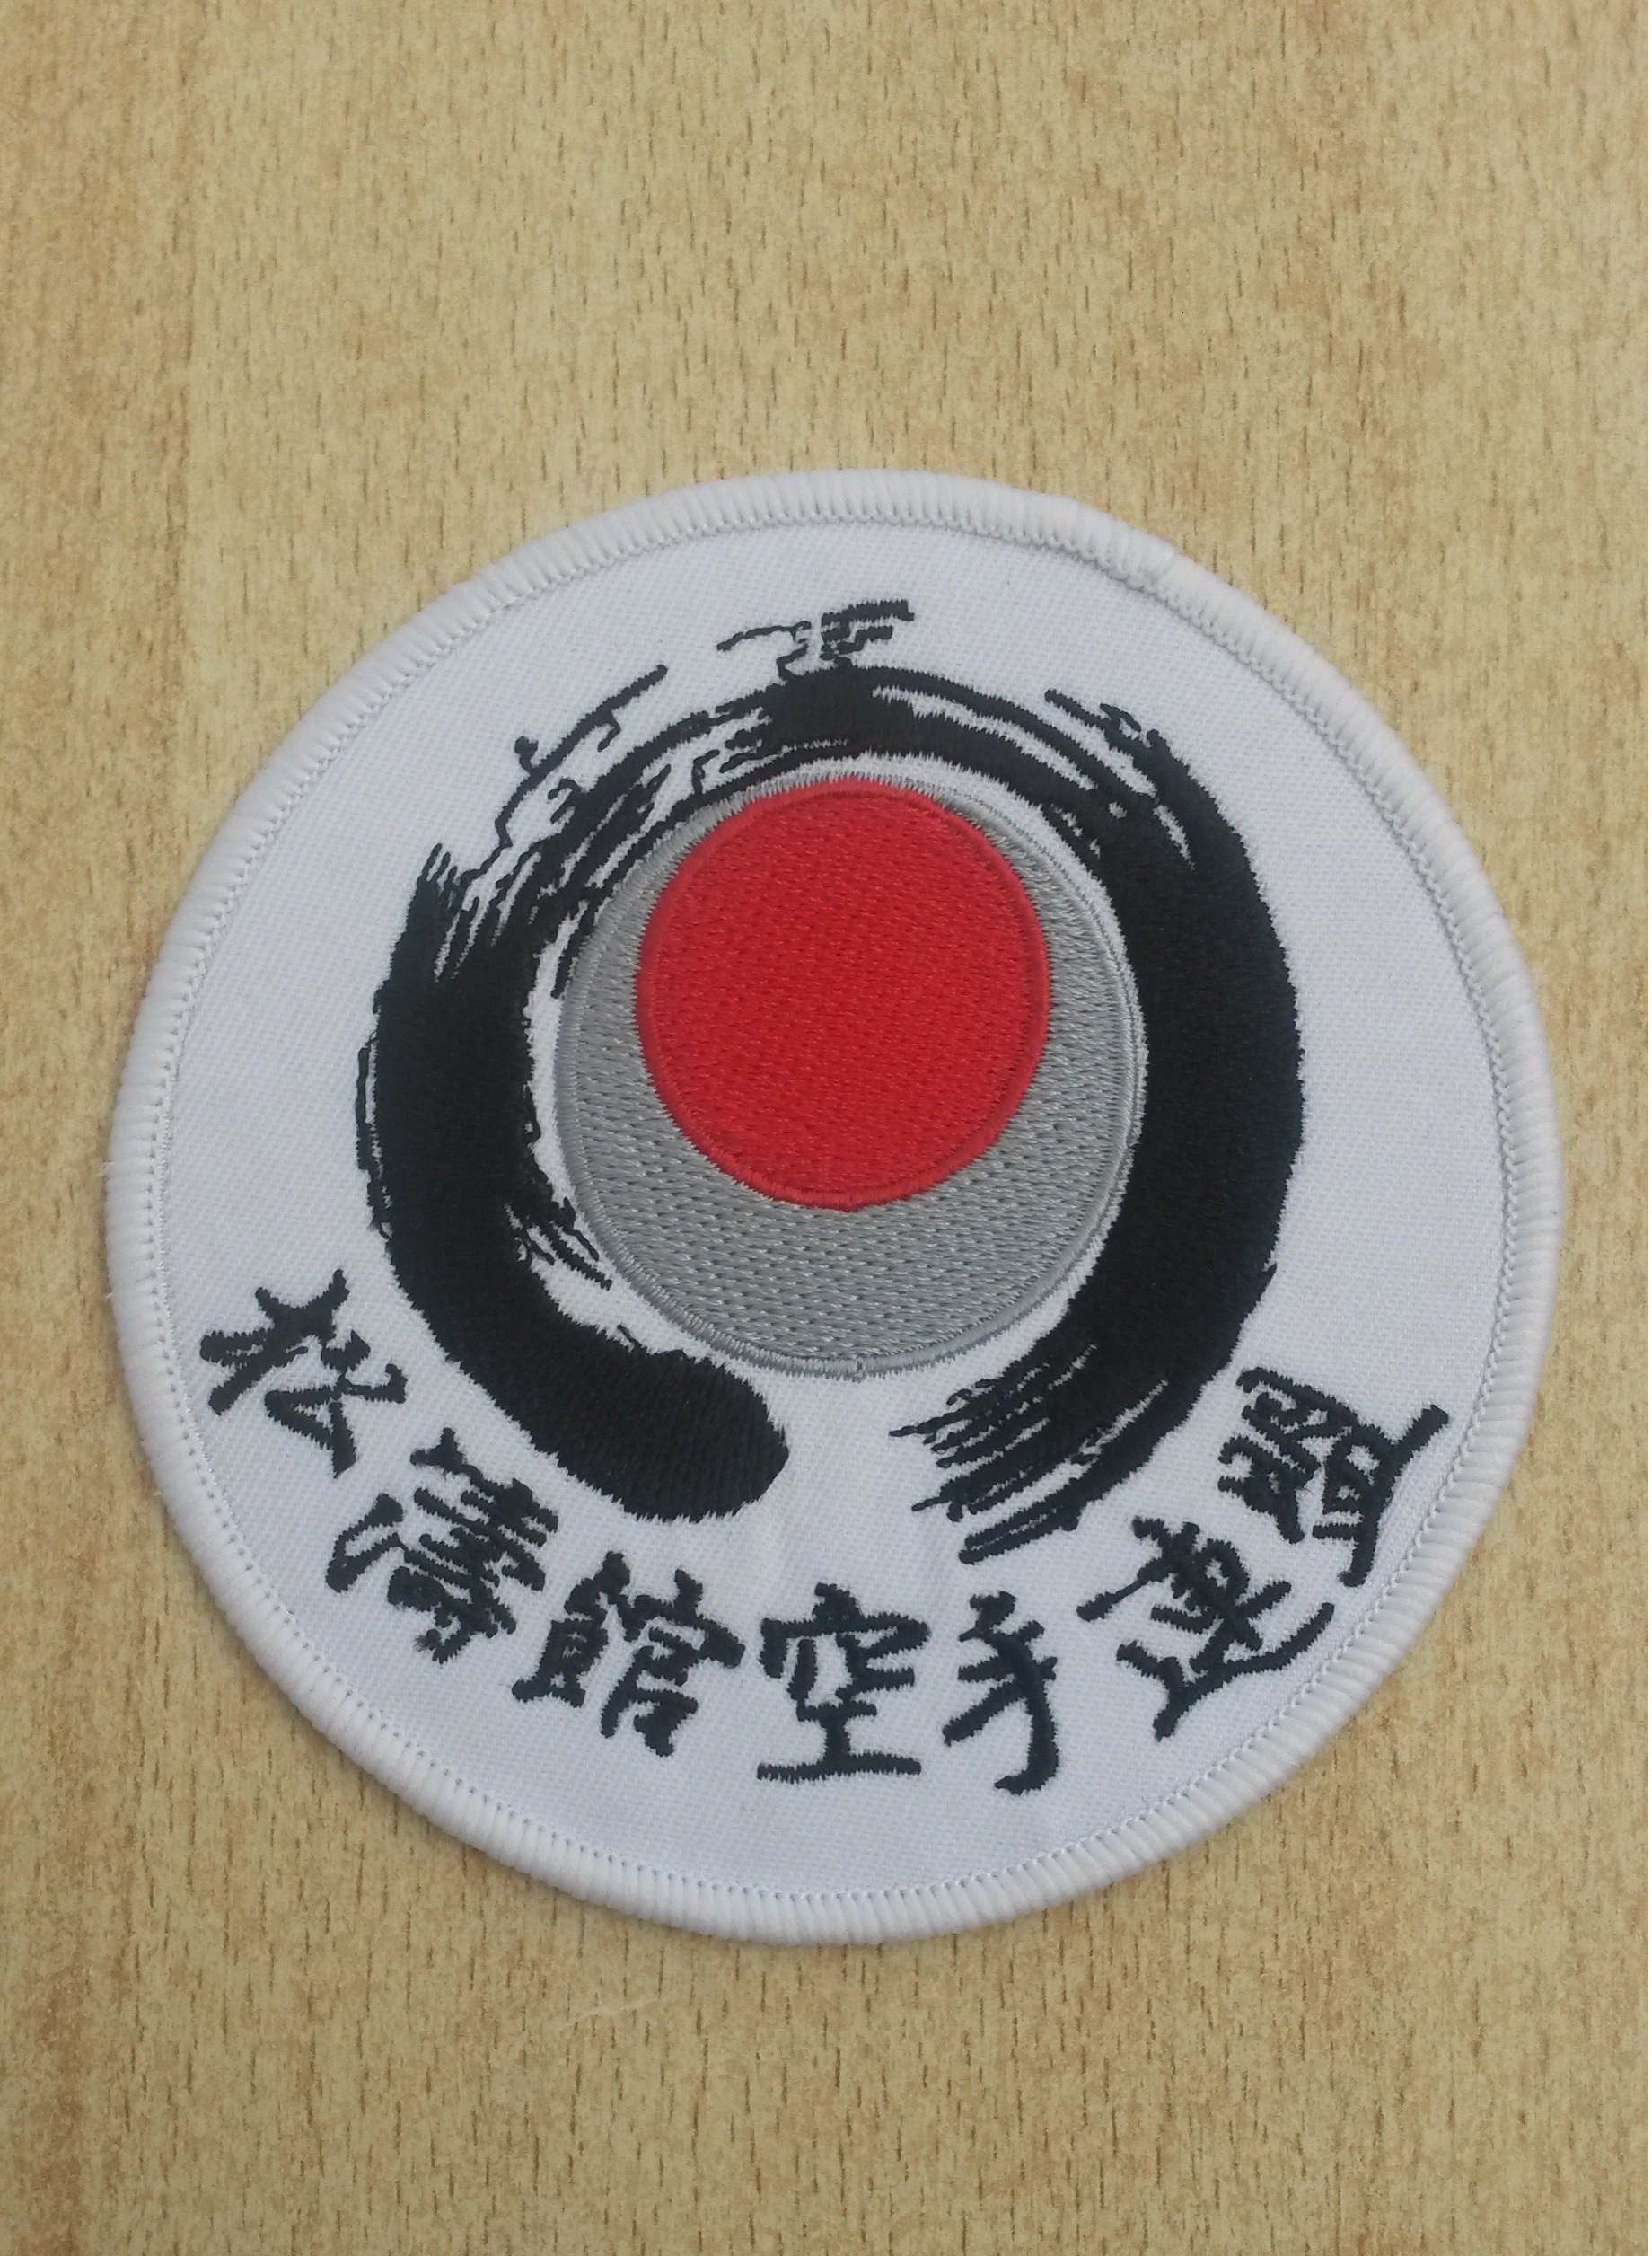 SKU OFFICIAL EMBROIDERED GI BADGE Shotokan Karate Union 松涛館 空手連盟